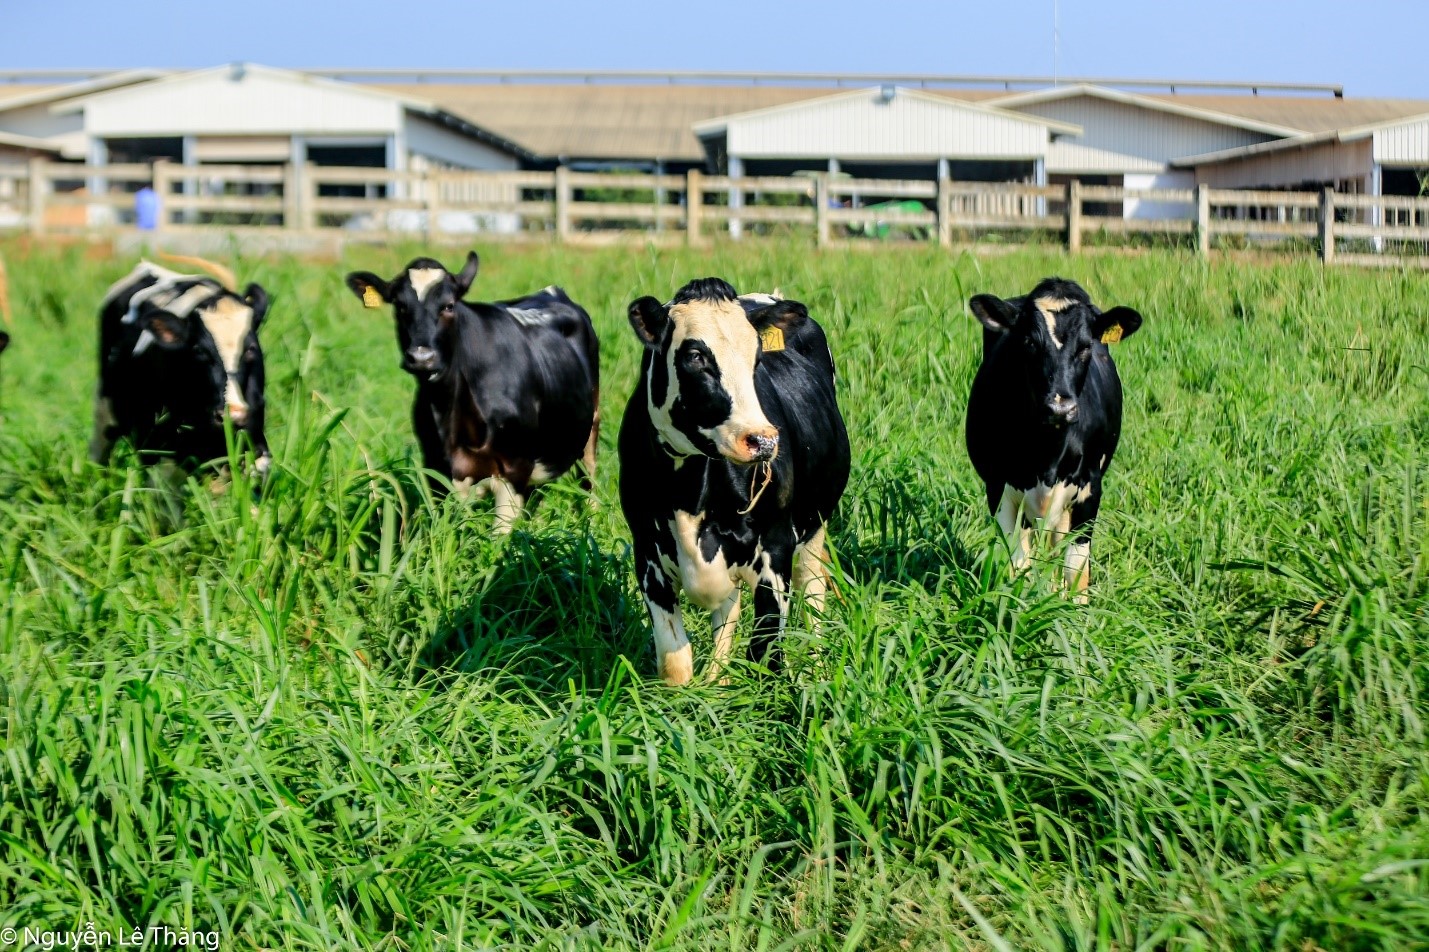 Nguồn năng lượng xanh trang trại bò sữa: Bạn muốn biết cách tận dụng nguồn năng lượng xanh từ trang trại bò sữa? Đến với chúng tôi và khám phá những công nghệ tiên tiến nhất giúp tối ưu hóa năng lượng xanh từ trang trại bò sữa. Hãy cùng chia sẻ tình yêu với cuộc sống bền vững và xanh trong một trang trại bò sữa.